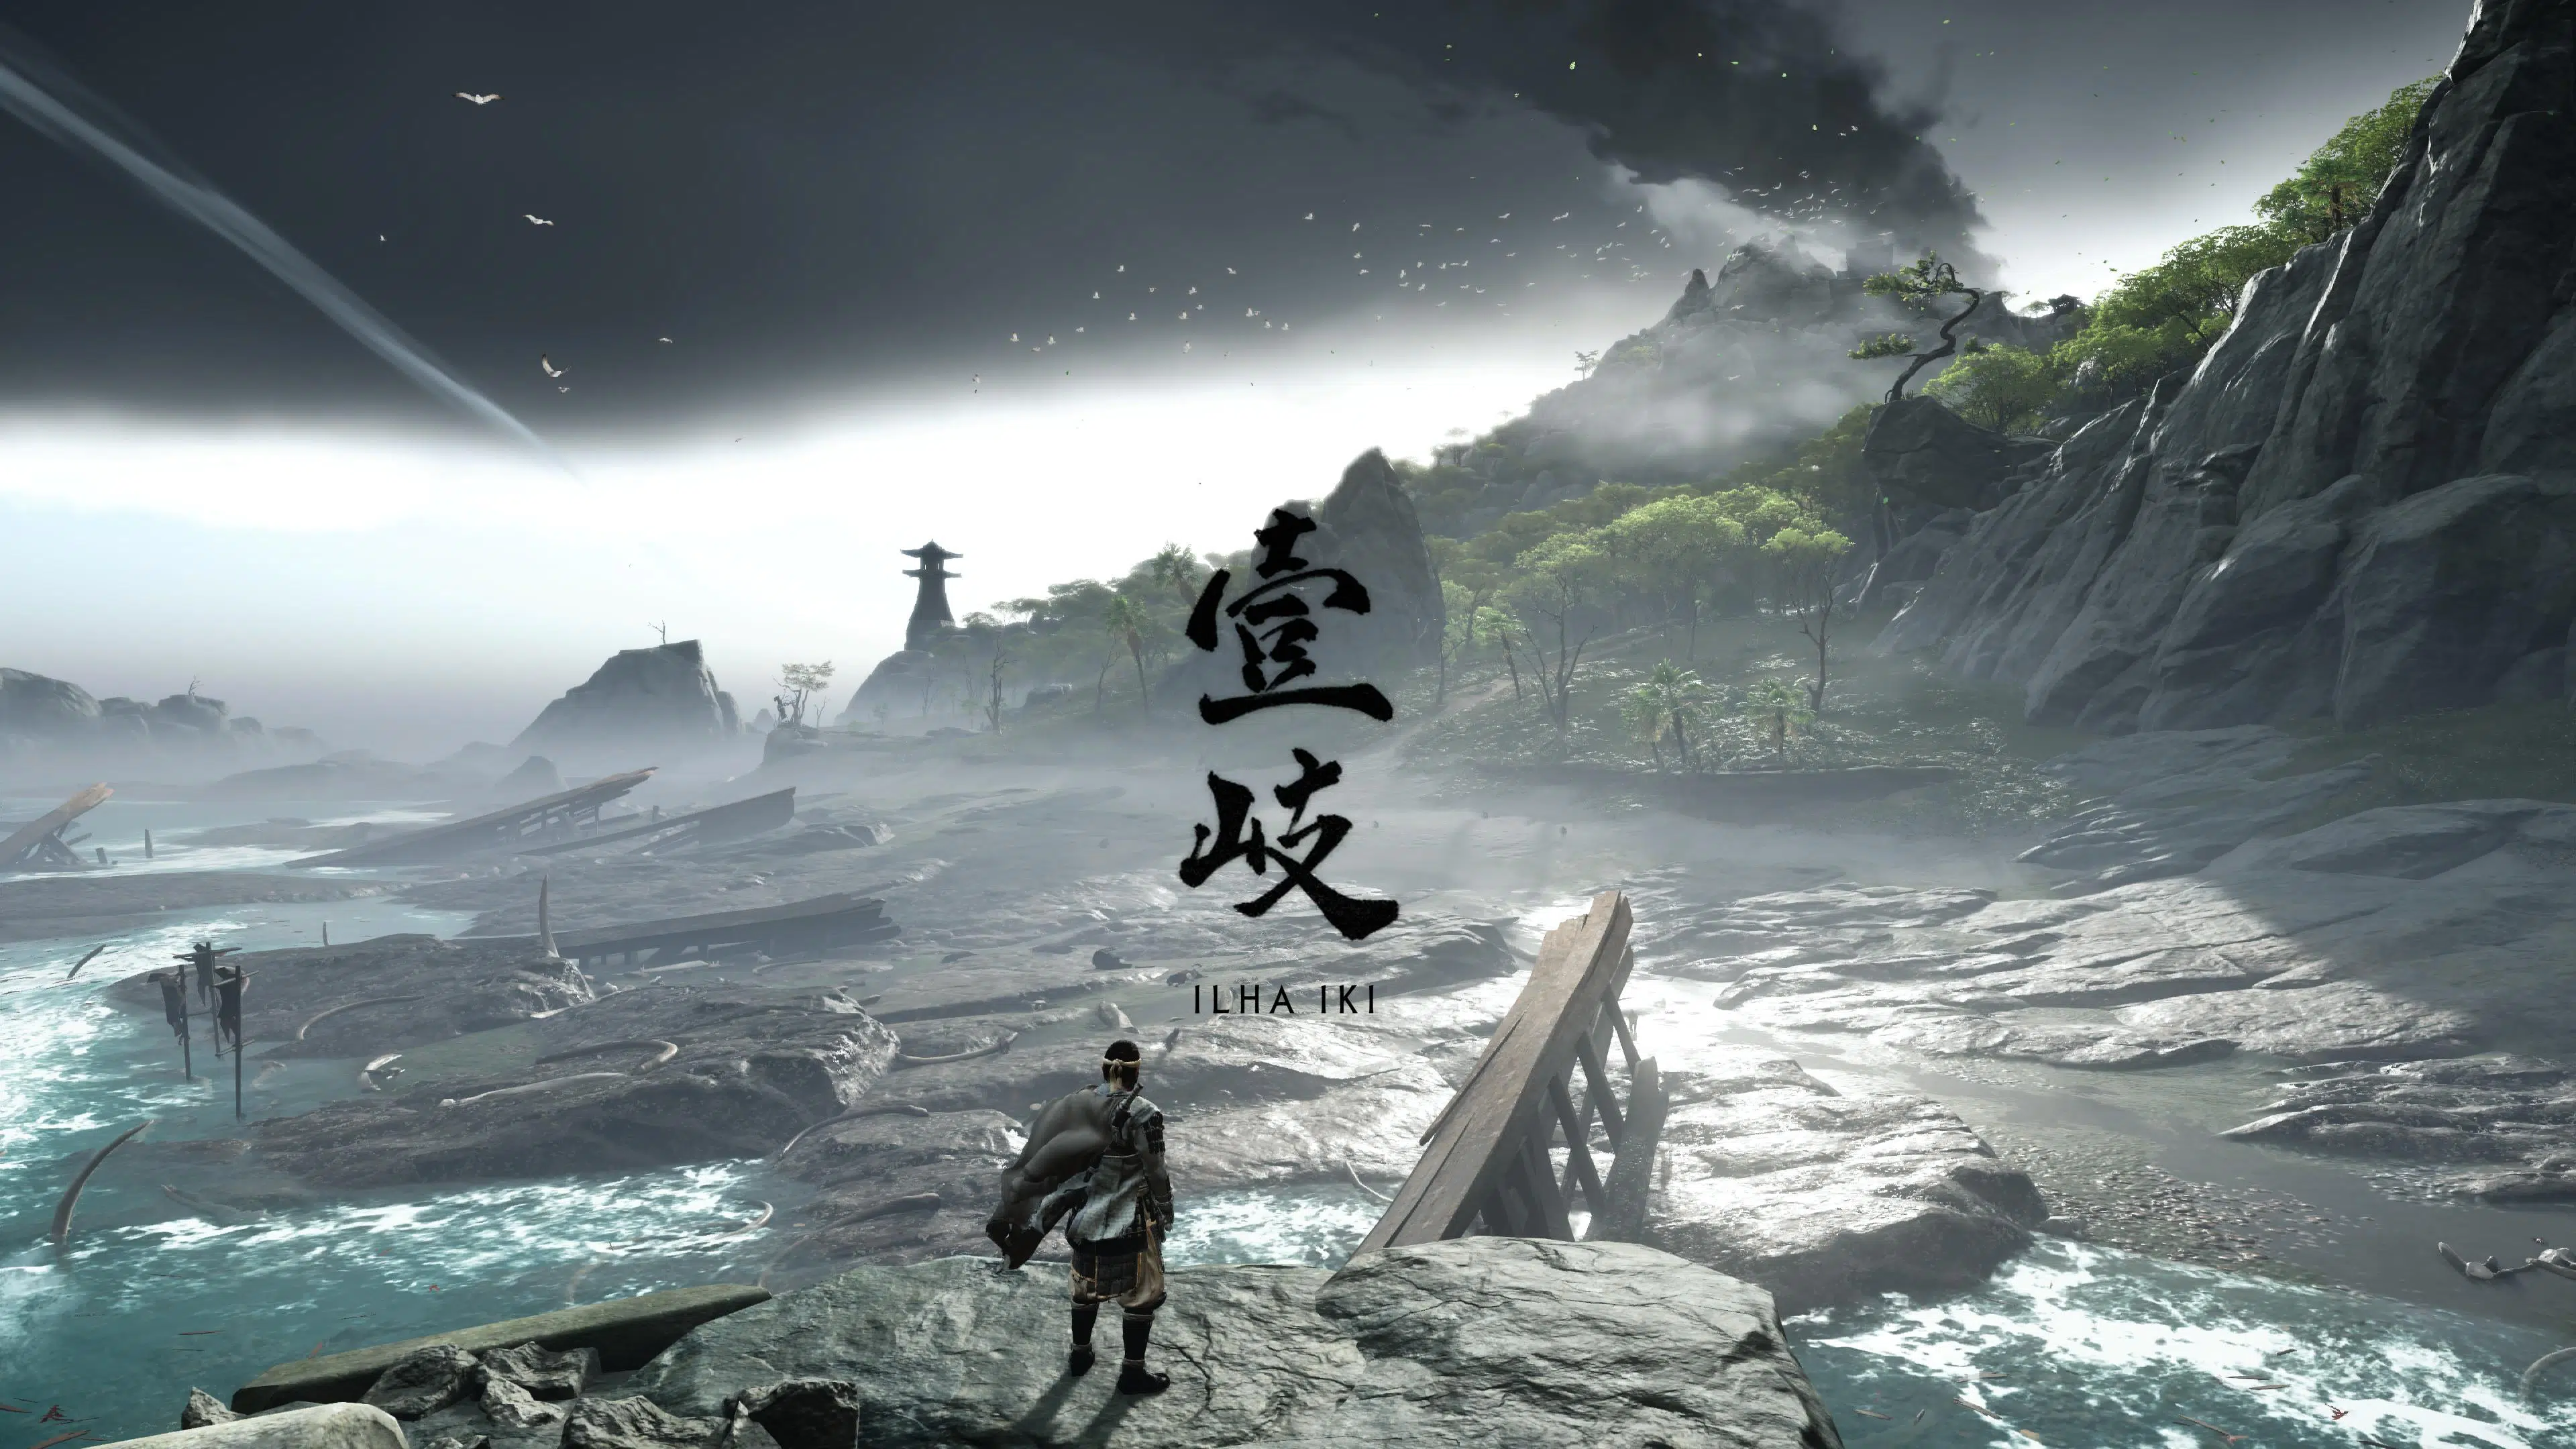 Ghost of Tsushima Director's Cut leva o jogador à Ilha Ikki